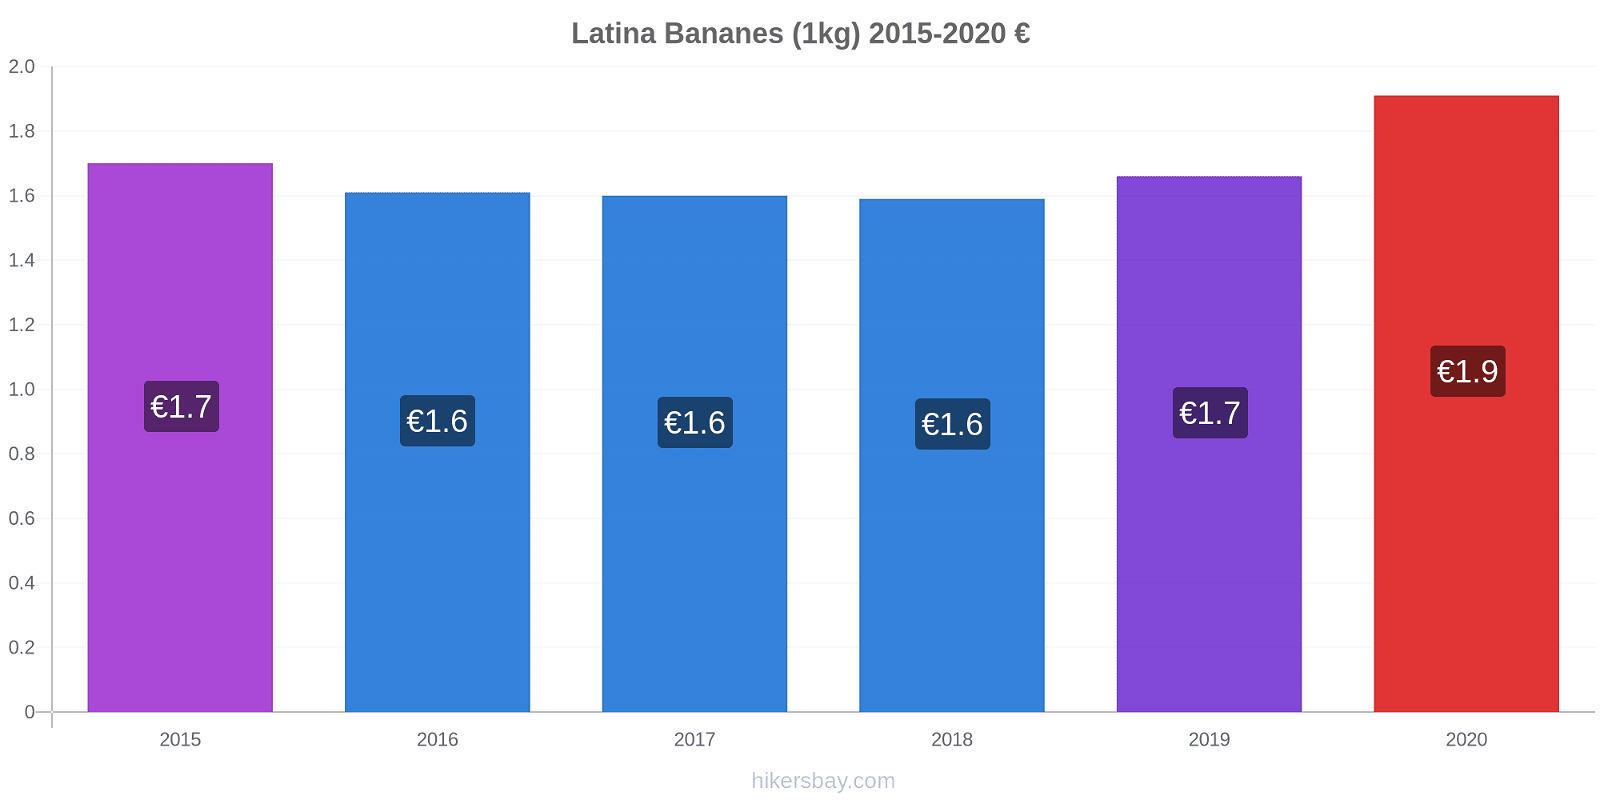 Latina changements de prix Bananes (1kg) hikersbay.com